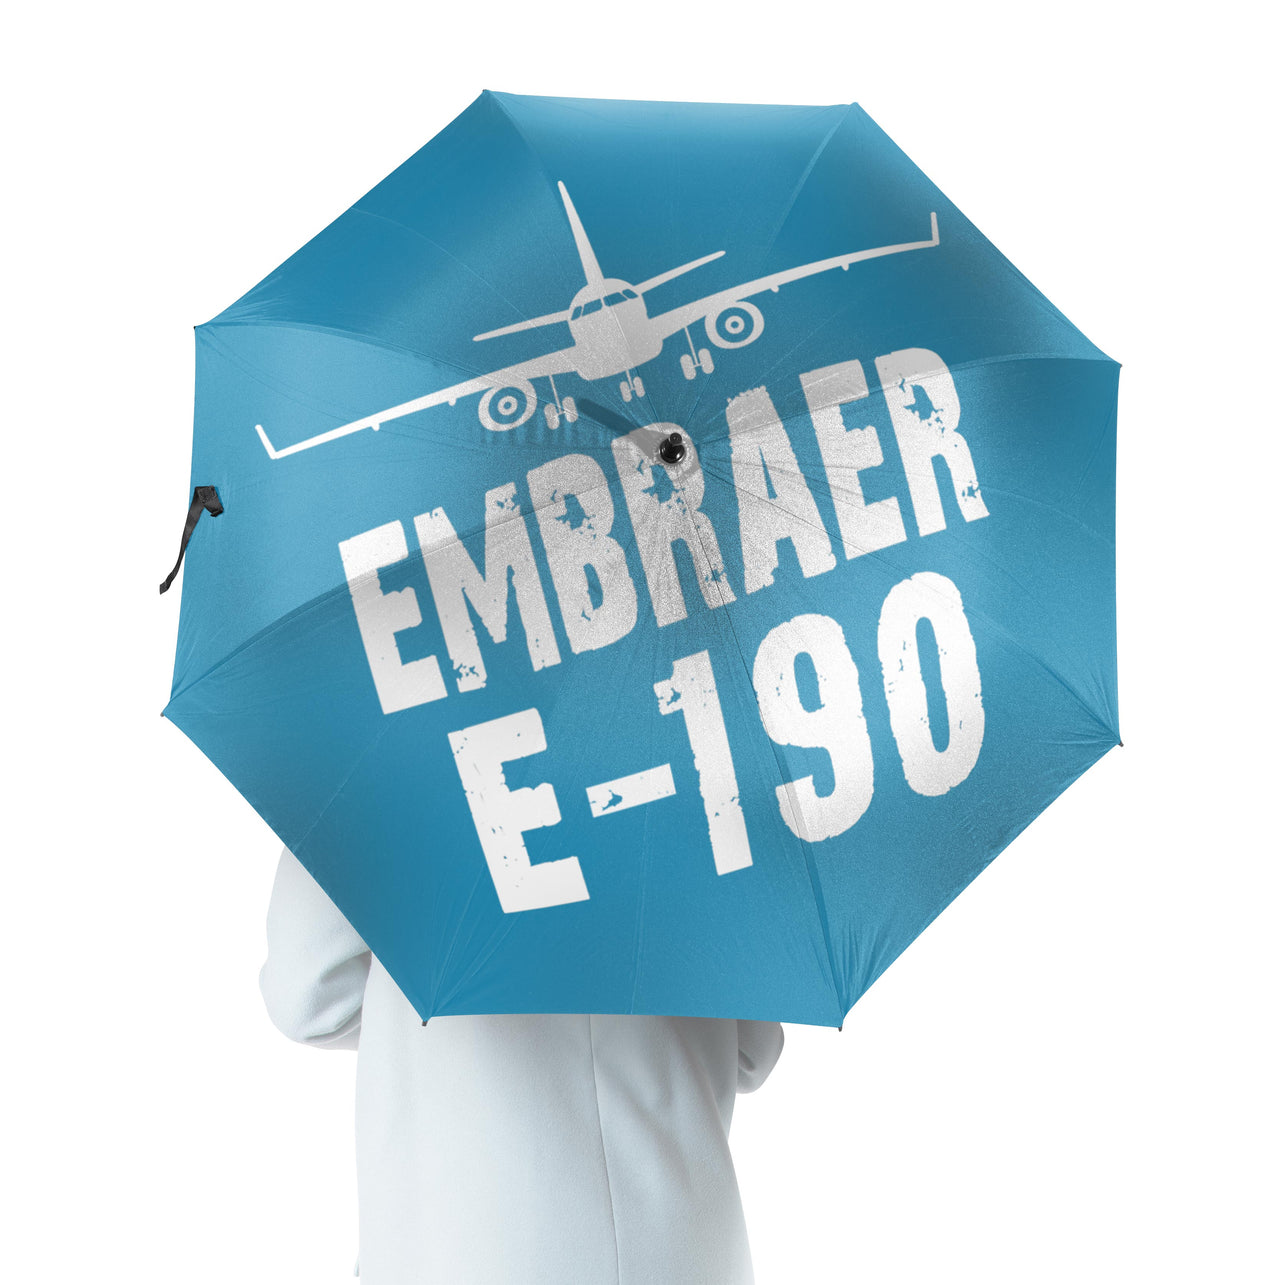 Embraer E-190 & Plane Designed Umbrella